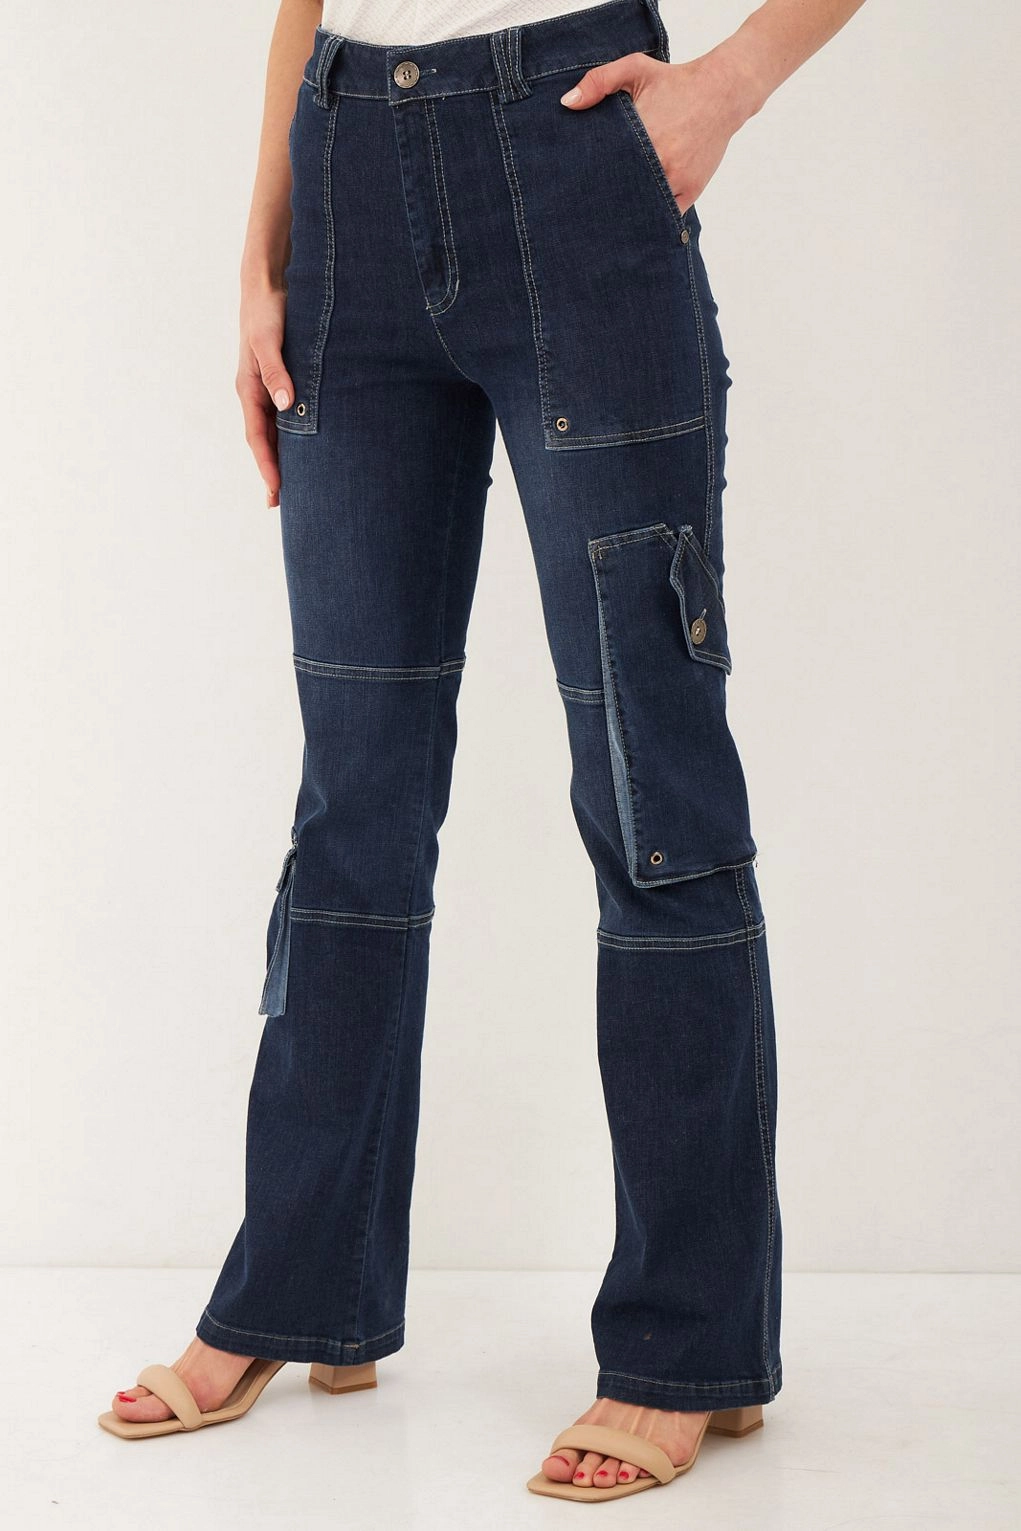 מכנסיים פטל ג'ינס כחול